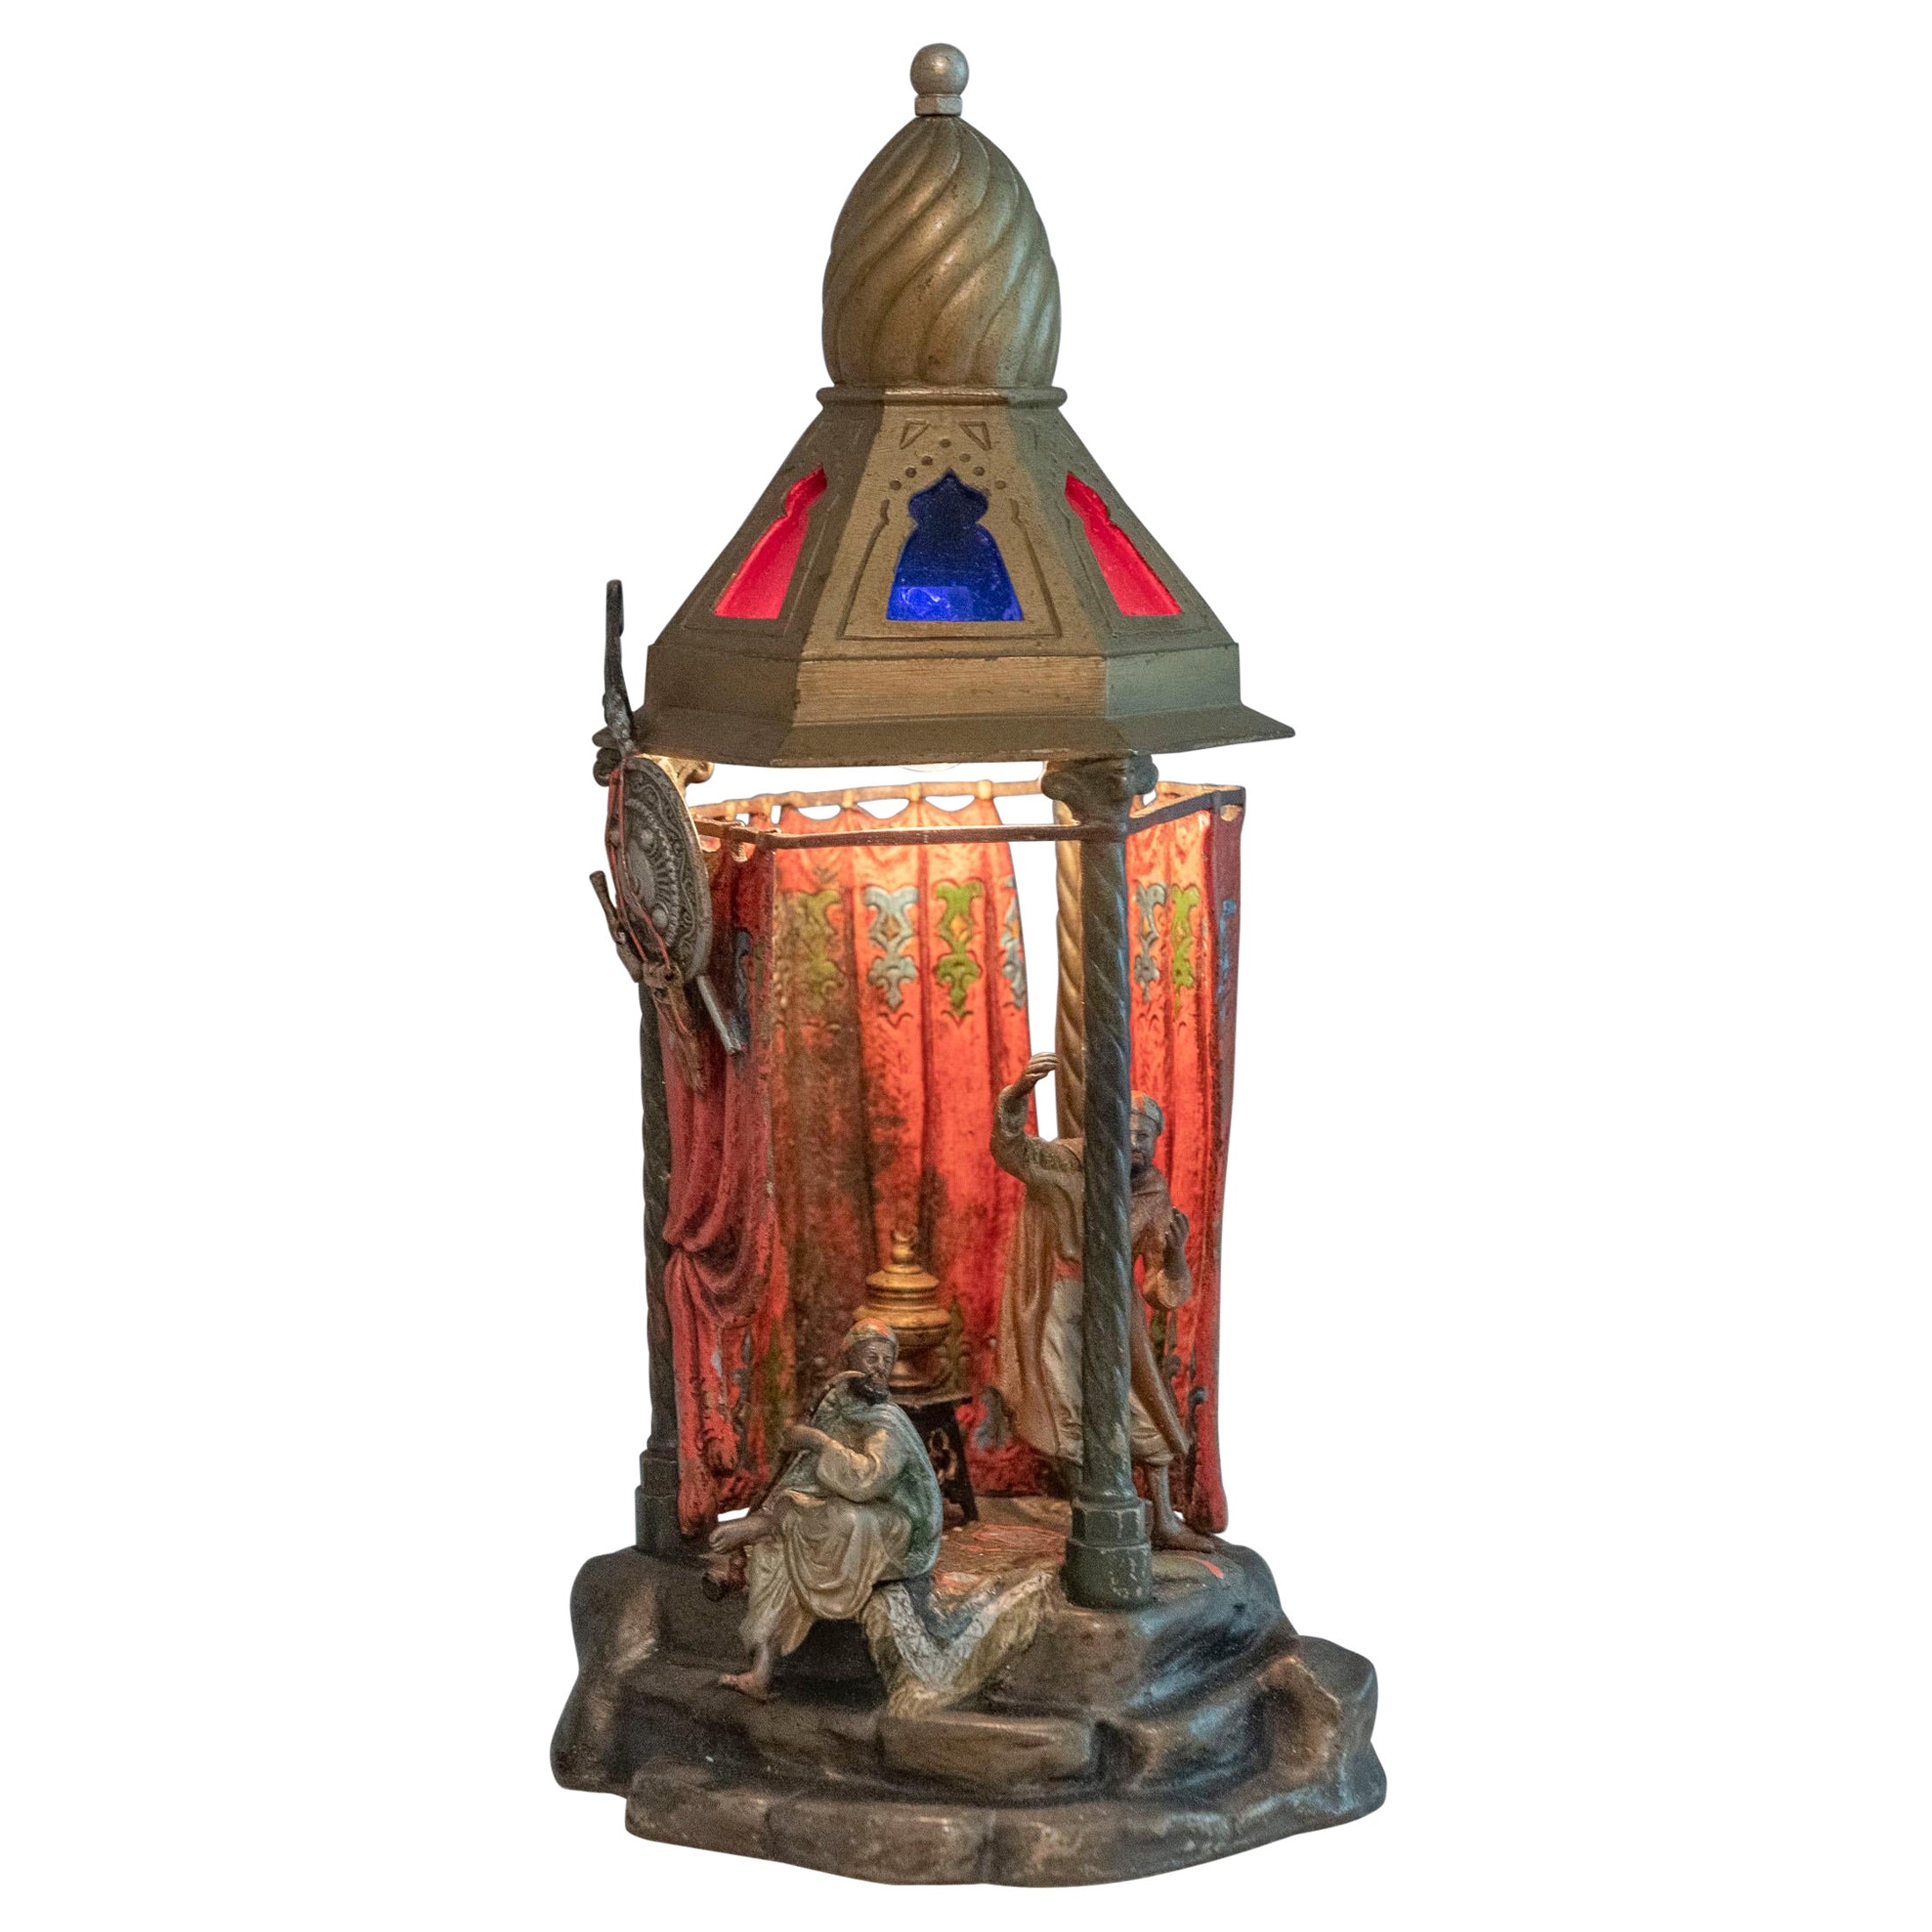 Lampe autrichienne orientaliste en bronze peint à froid avec 2 personnages à l'intérieur d'une petite pièce